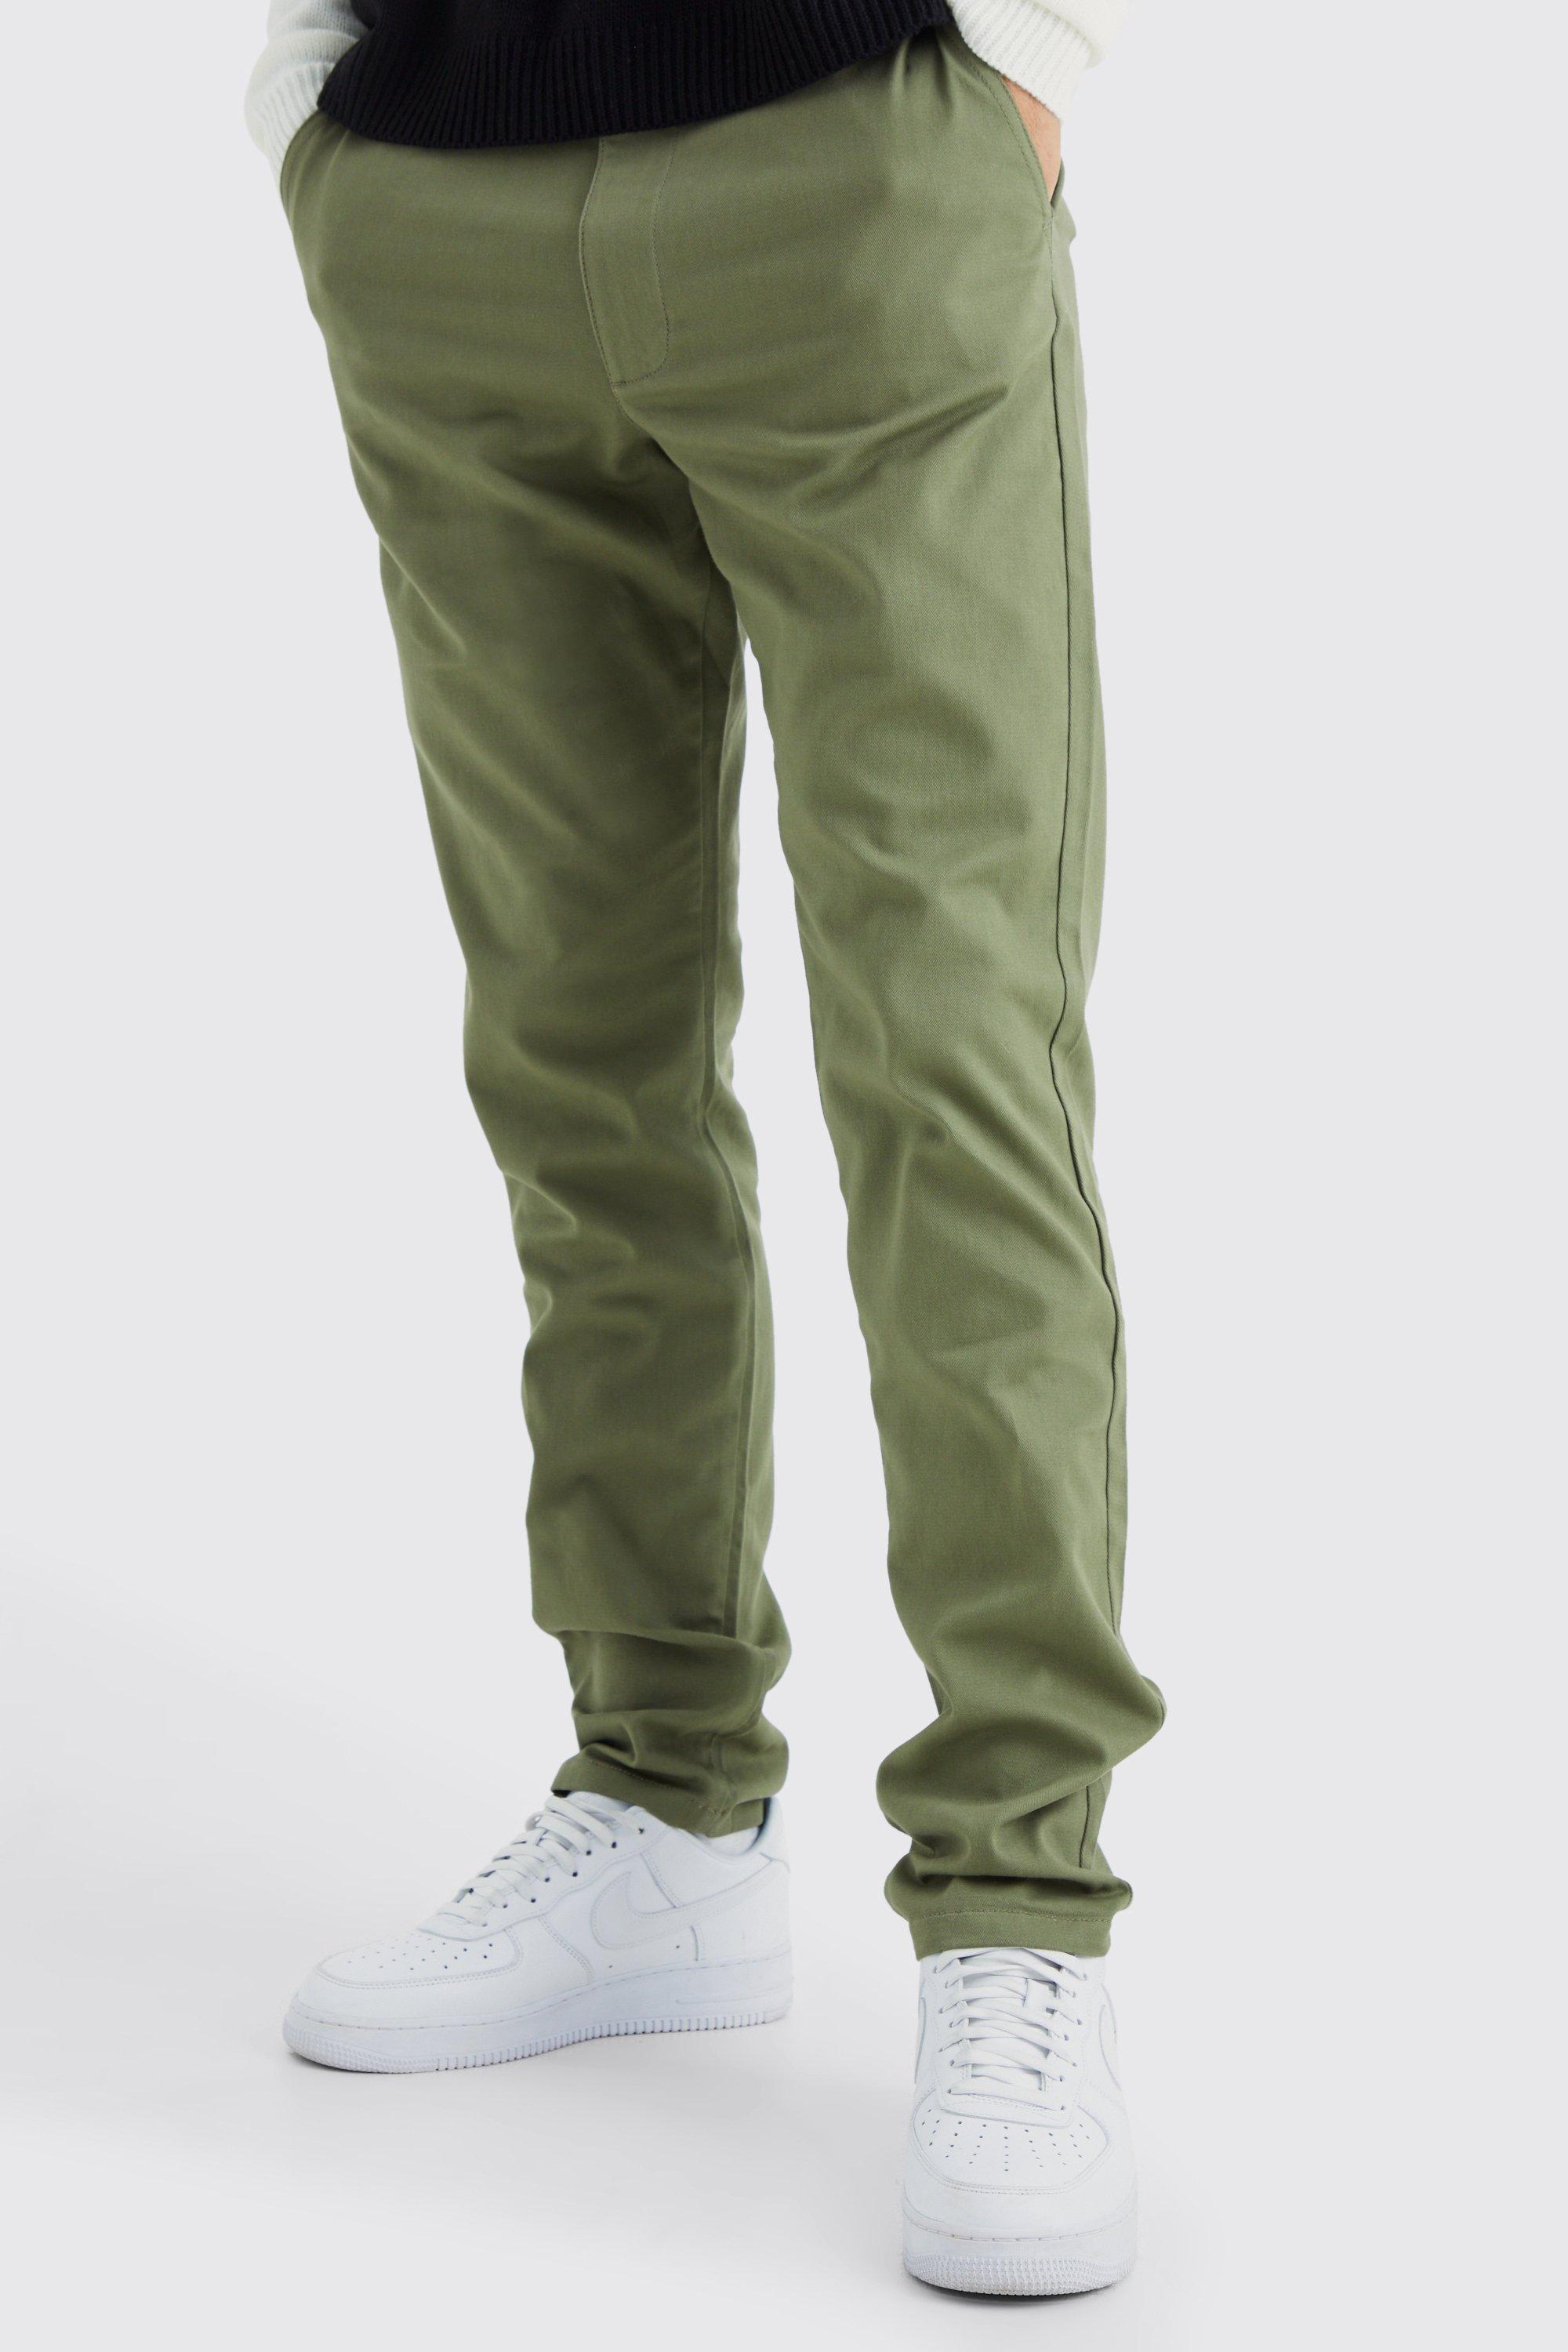 Image of Pantaloni Chino Tall Slim Fit con vita fissa, Verde